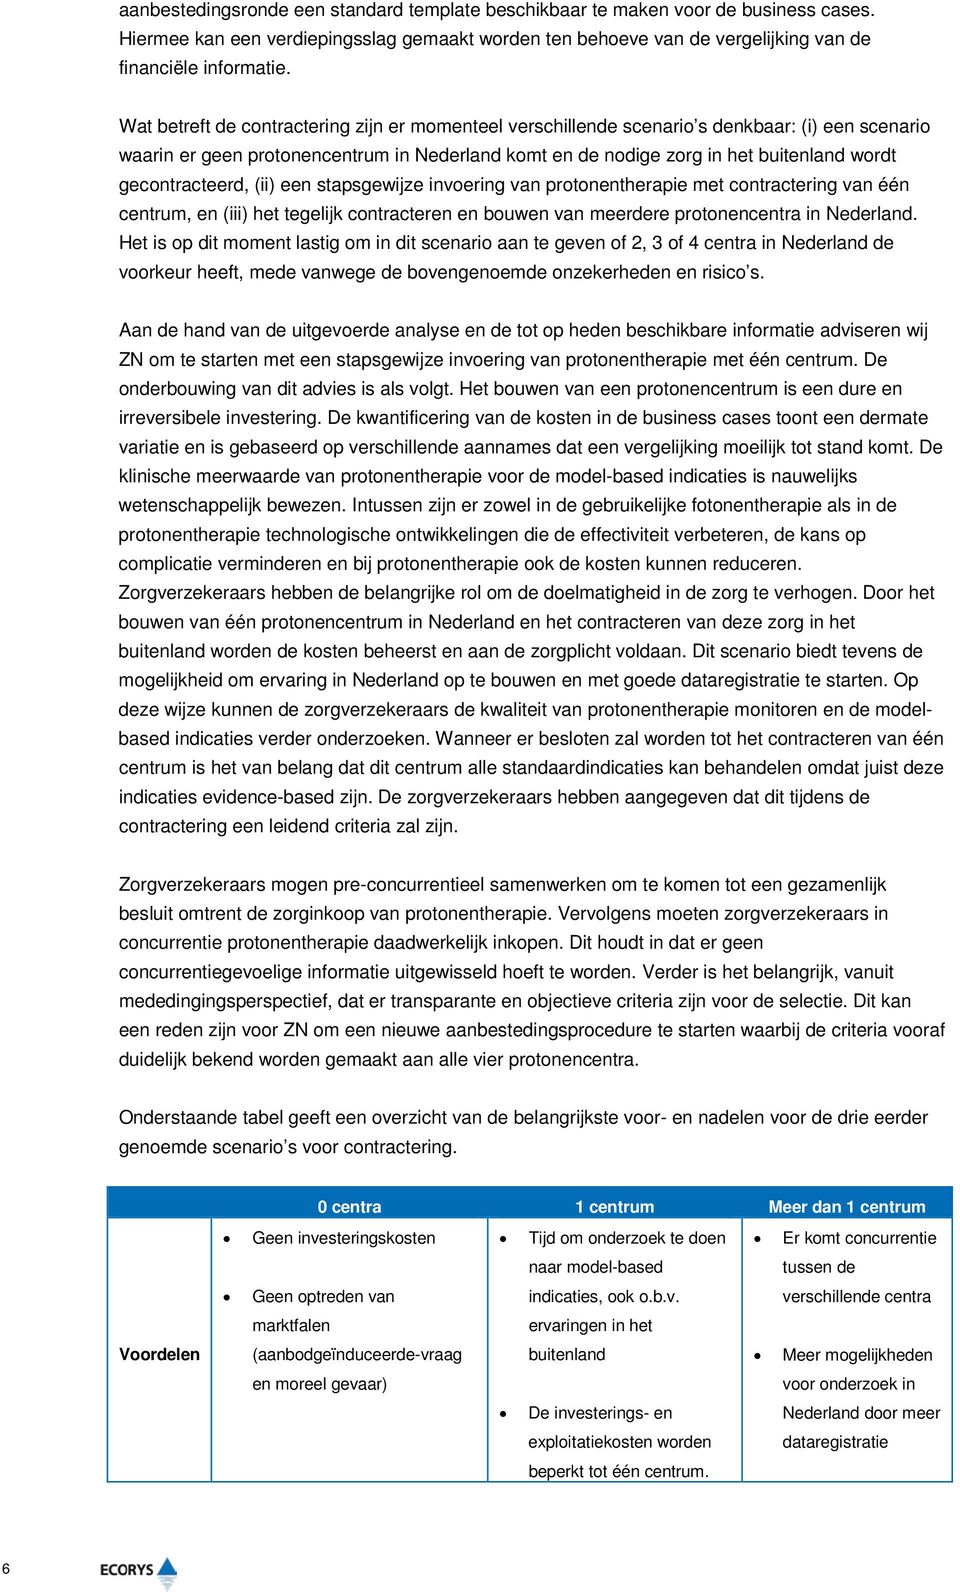 gecontracteerd, (ii) een stapsgewijze invoering van protonentherapie met contractering van één centrum, en (iii) het tegelijk contracteren en bouwen van meerdere protonencentra in Nederland.